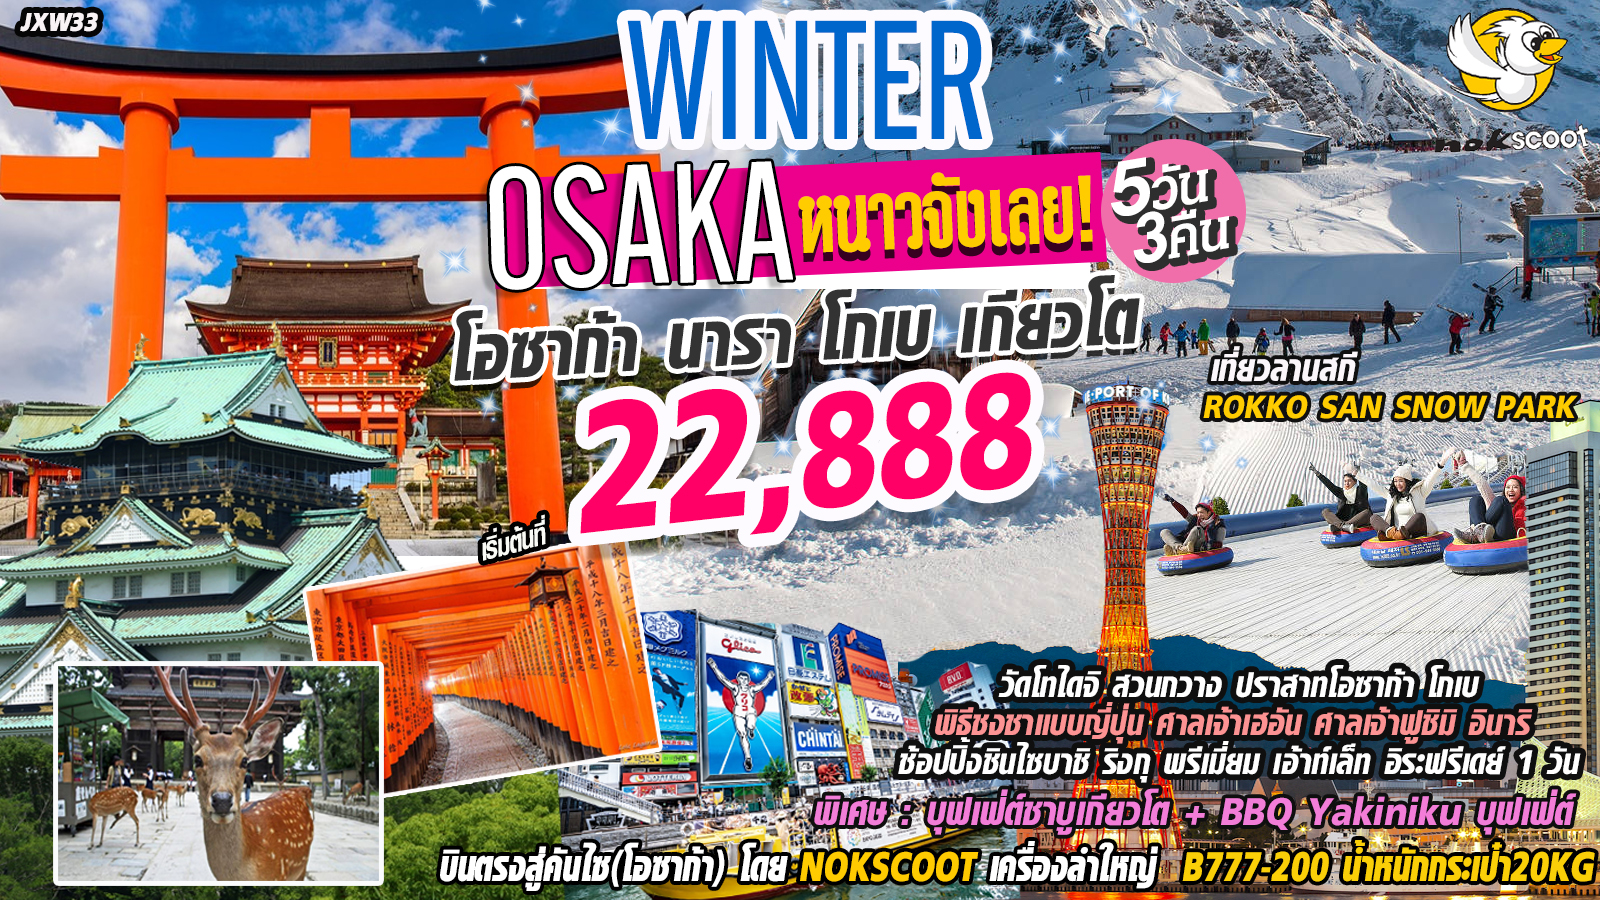  ปีใหม่ !! ทัวร์ญี่ปุ่น หนาวจังเลย โอซาก้า นารา เกียวโต  5วัน 3คืน(DEC19-MAR20)(JXW33) 